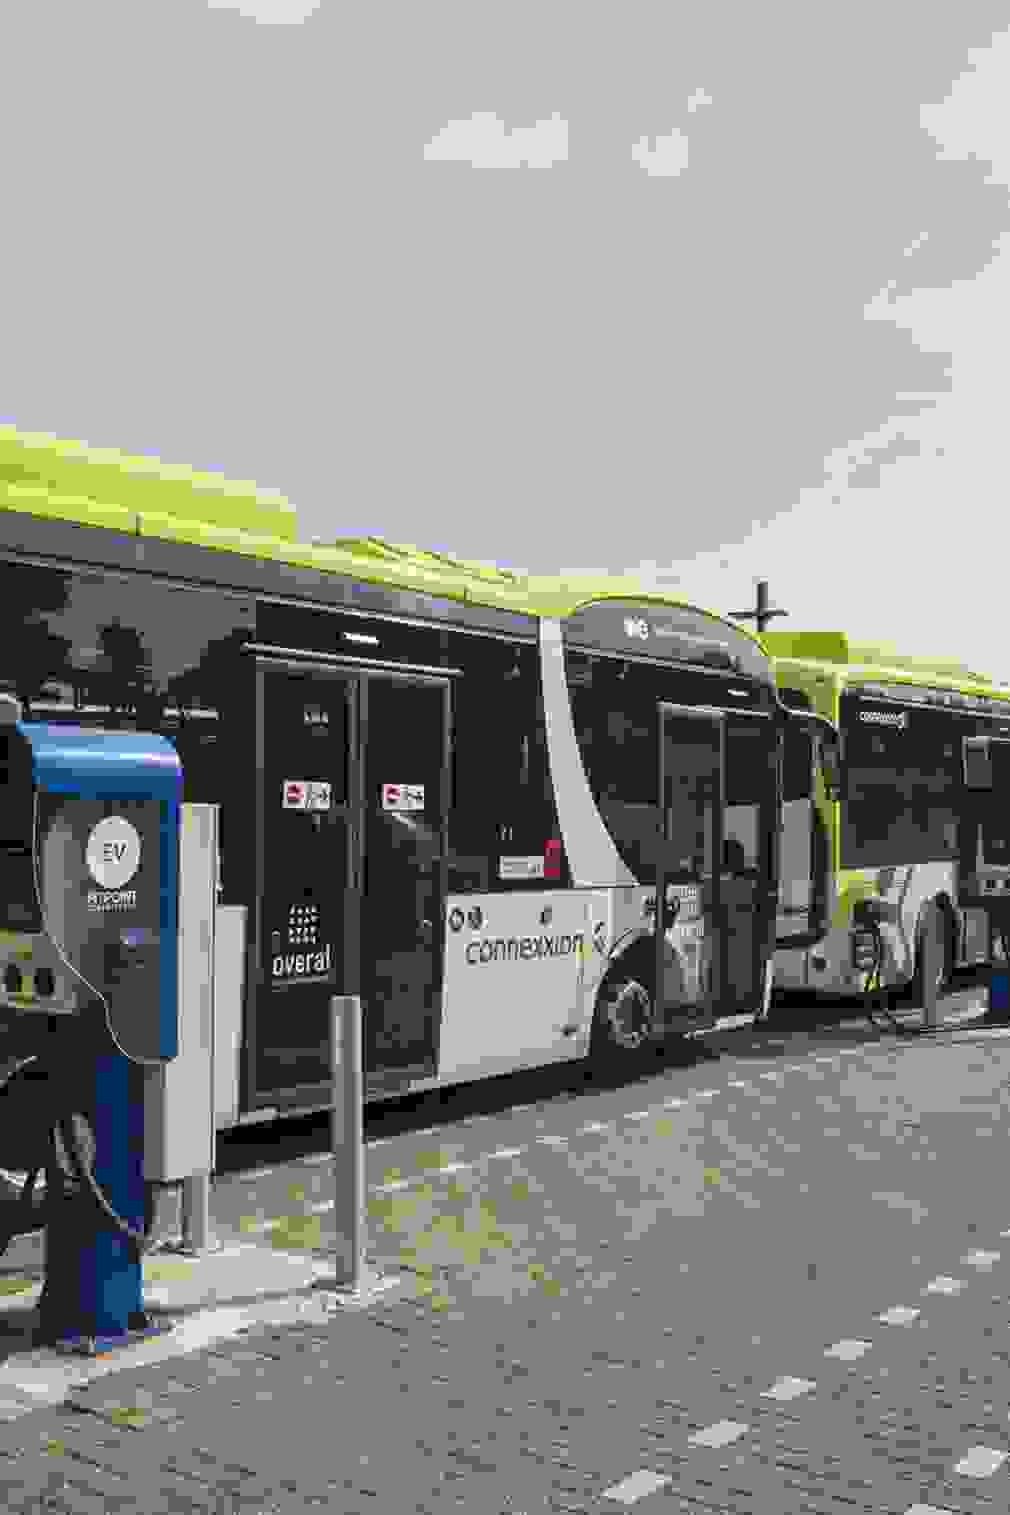 EV Connection Bus